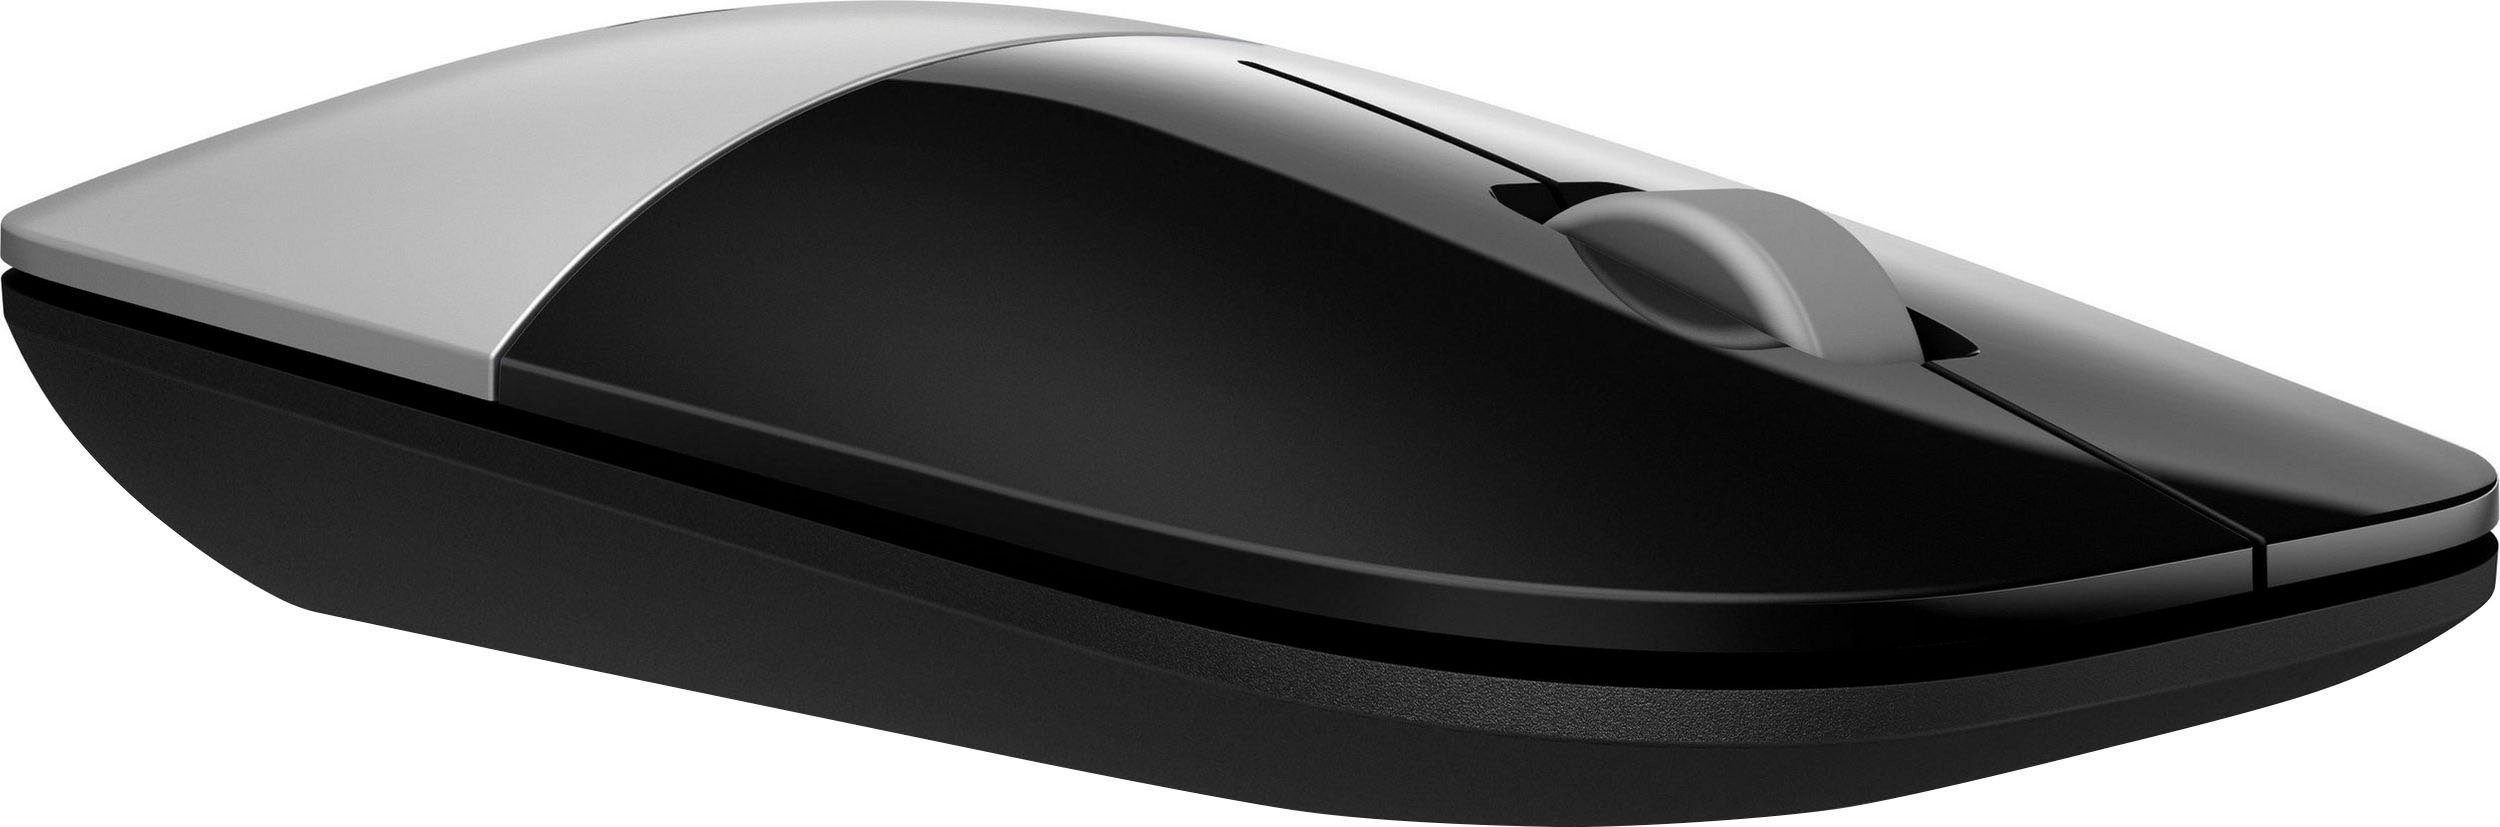 HP Z3700 schwarz/silberfarben Maus